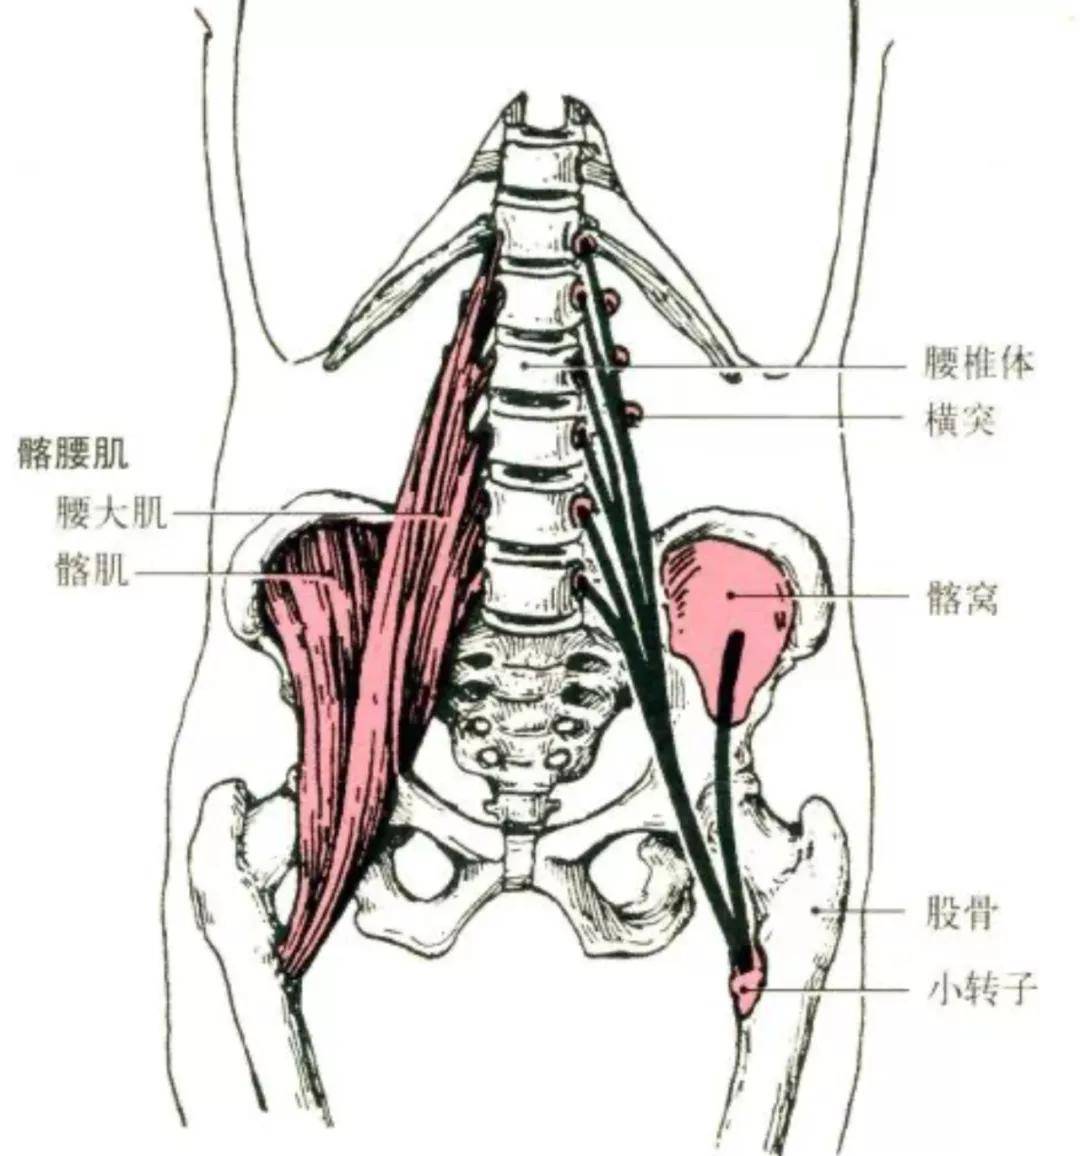 健身需要懂点解剖学(二):下肢肌肉解剖及功能讲解